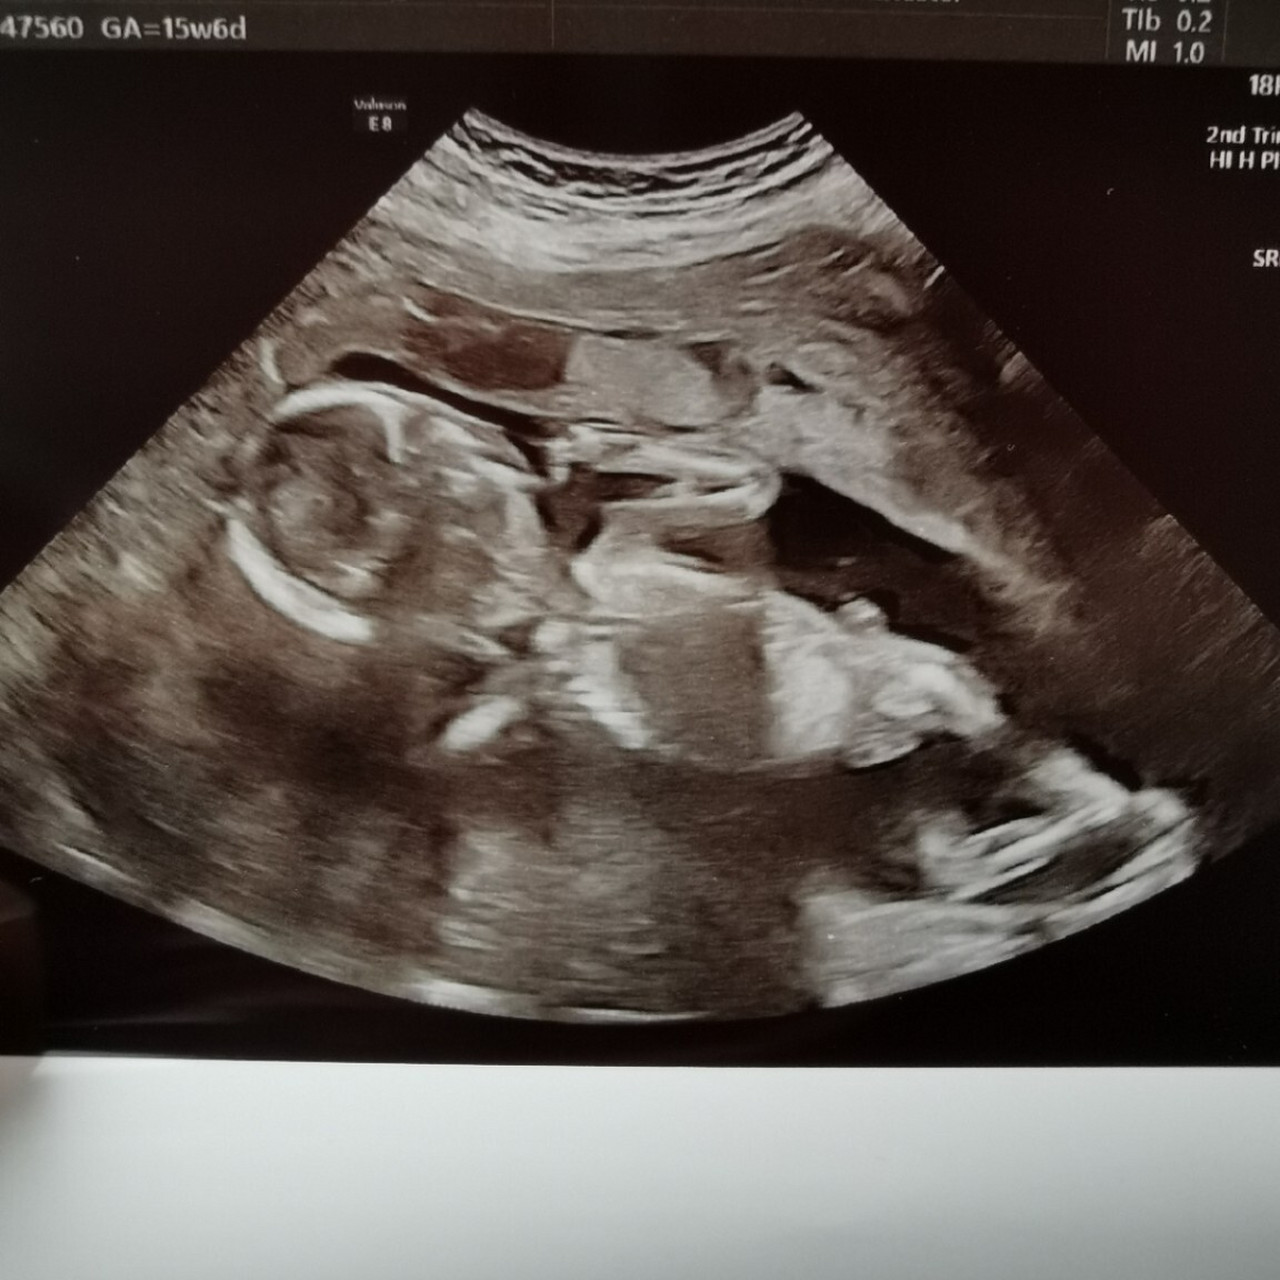 孕16周胎儿位置图图片